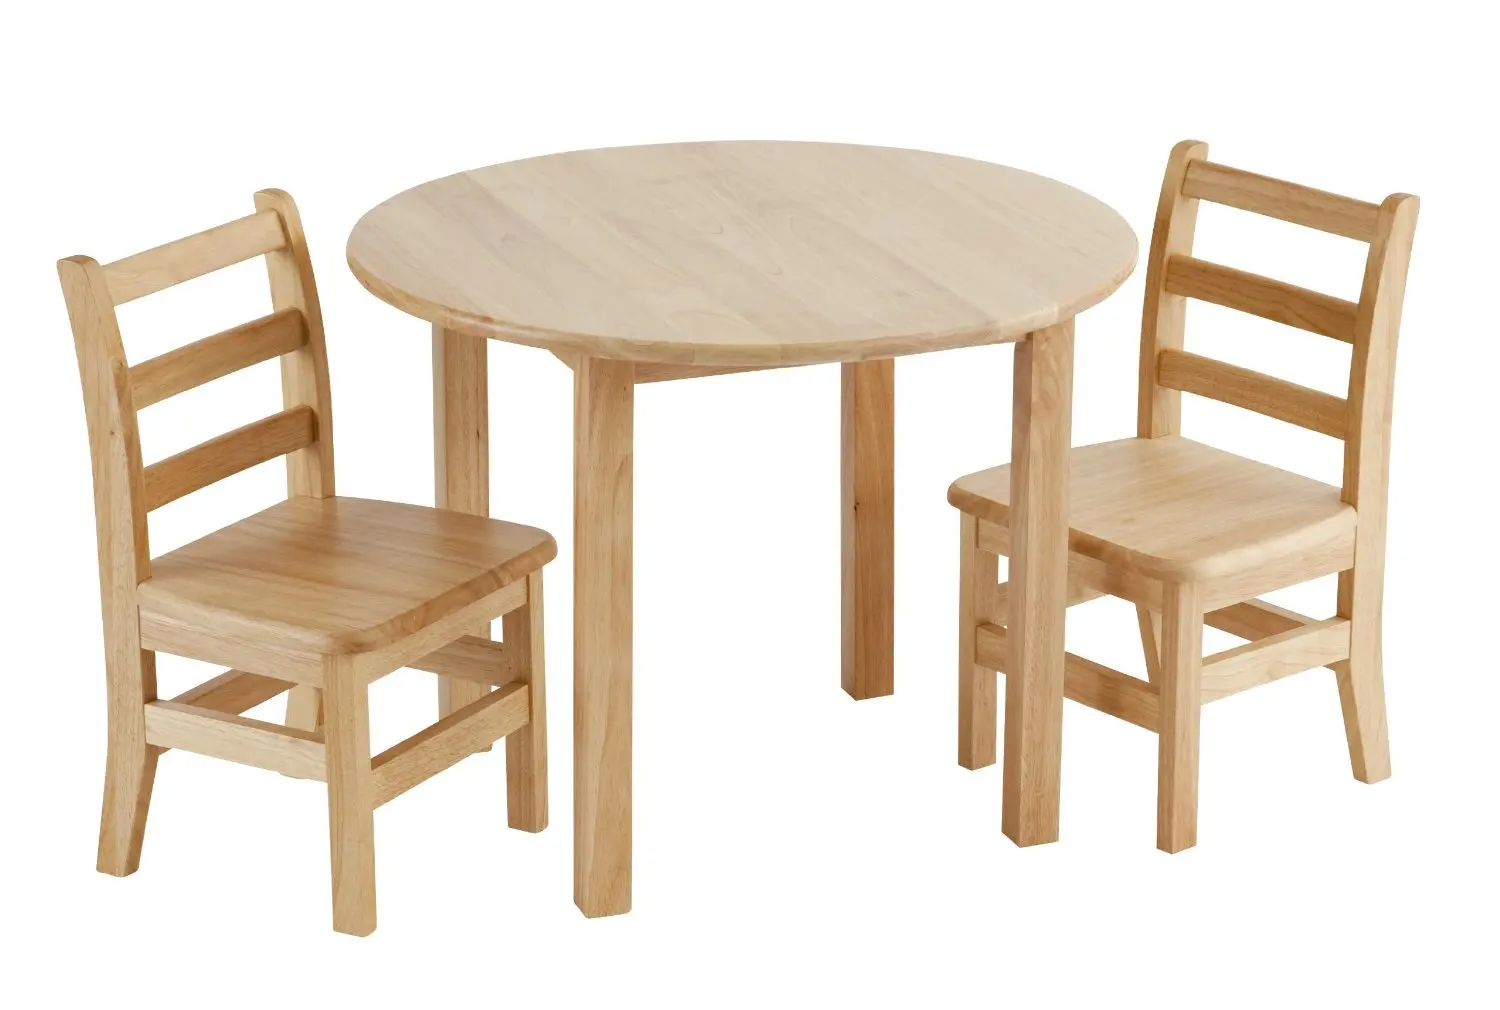 Деревянный стол для детей